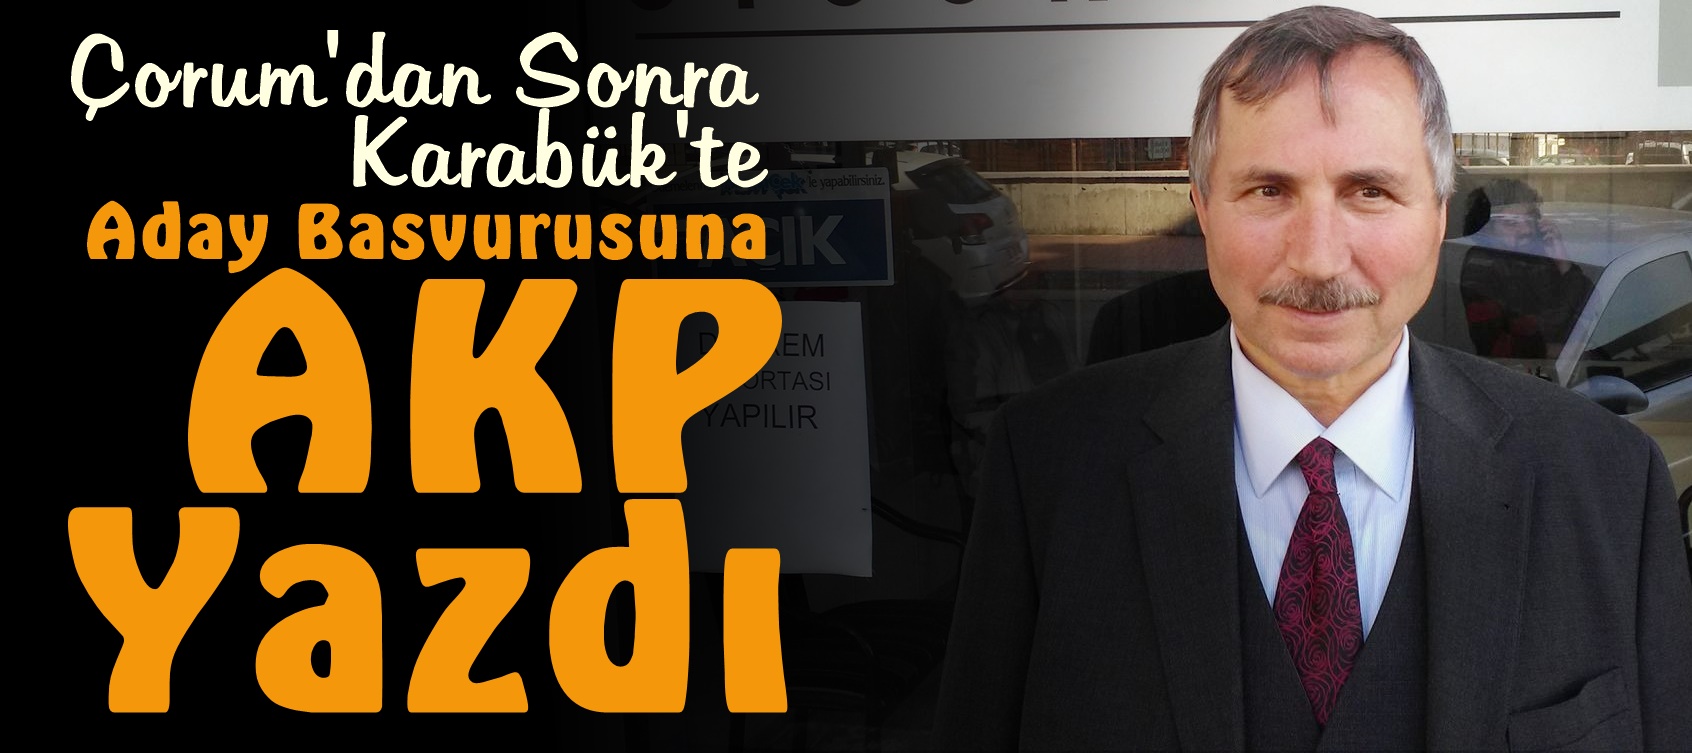 Aday başvurusuna “AKP” Yazdı..!!